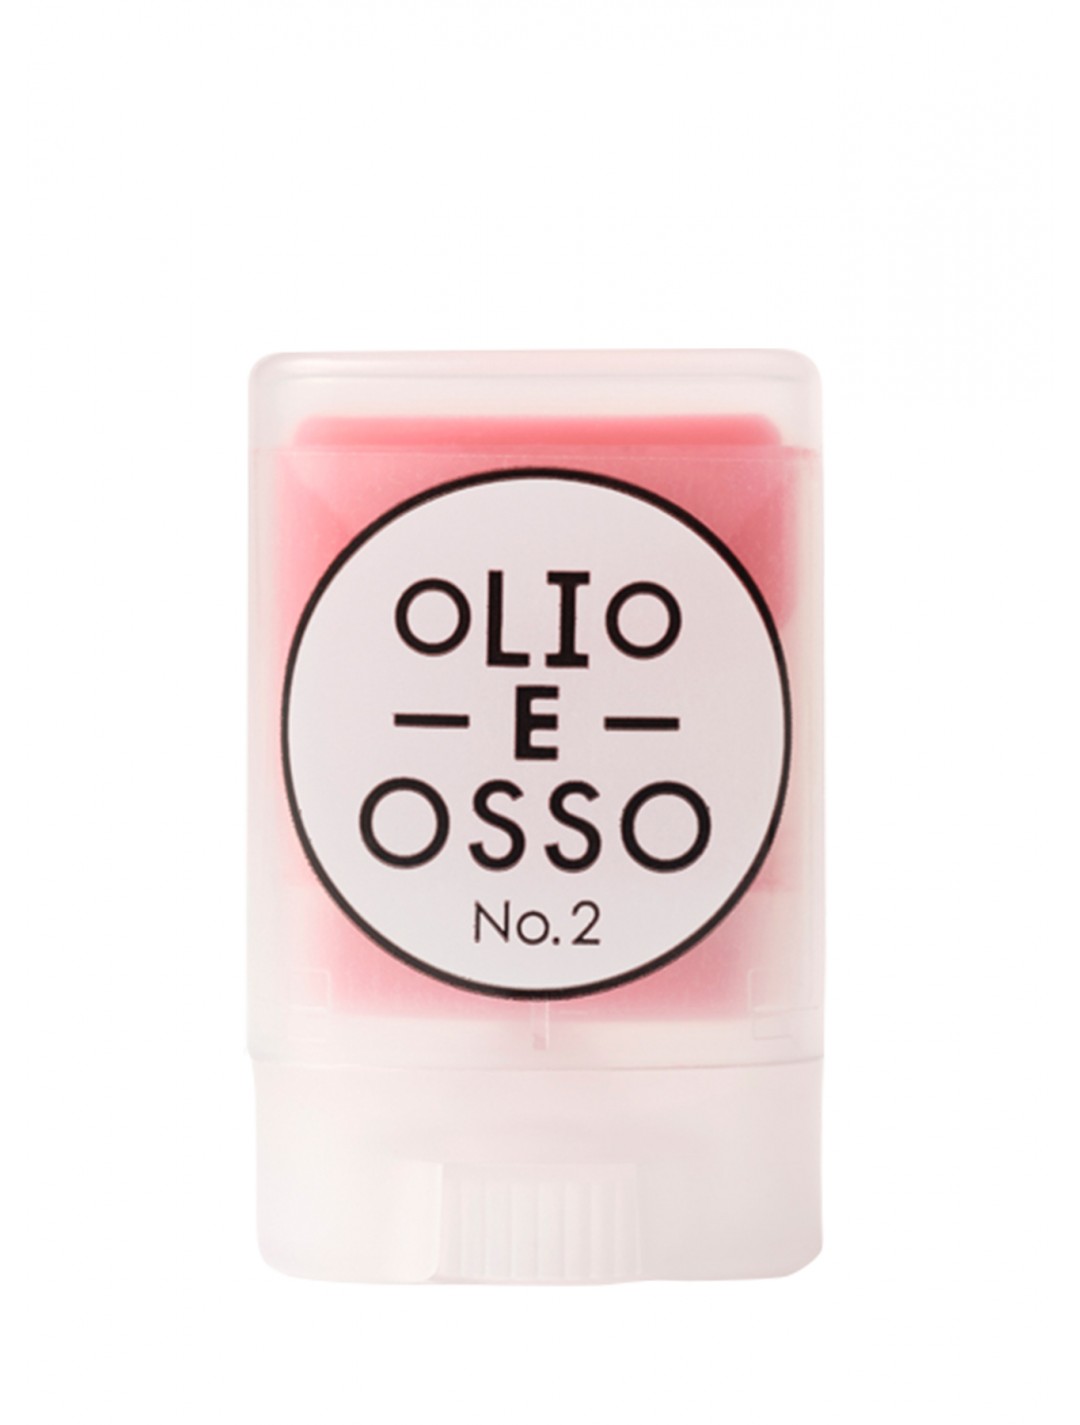 Olio E Osso Lip & Blush - French Melon